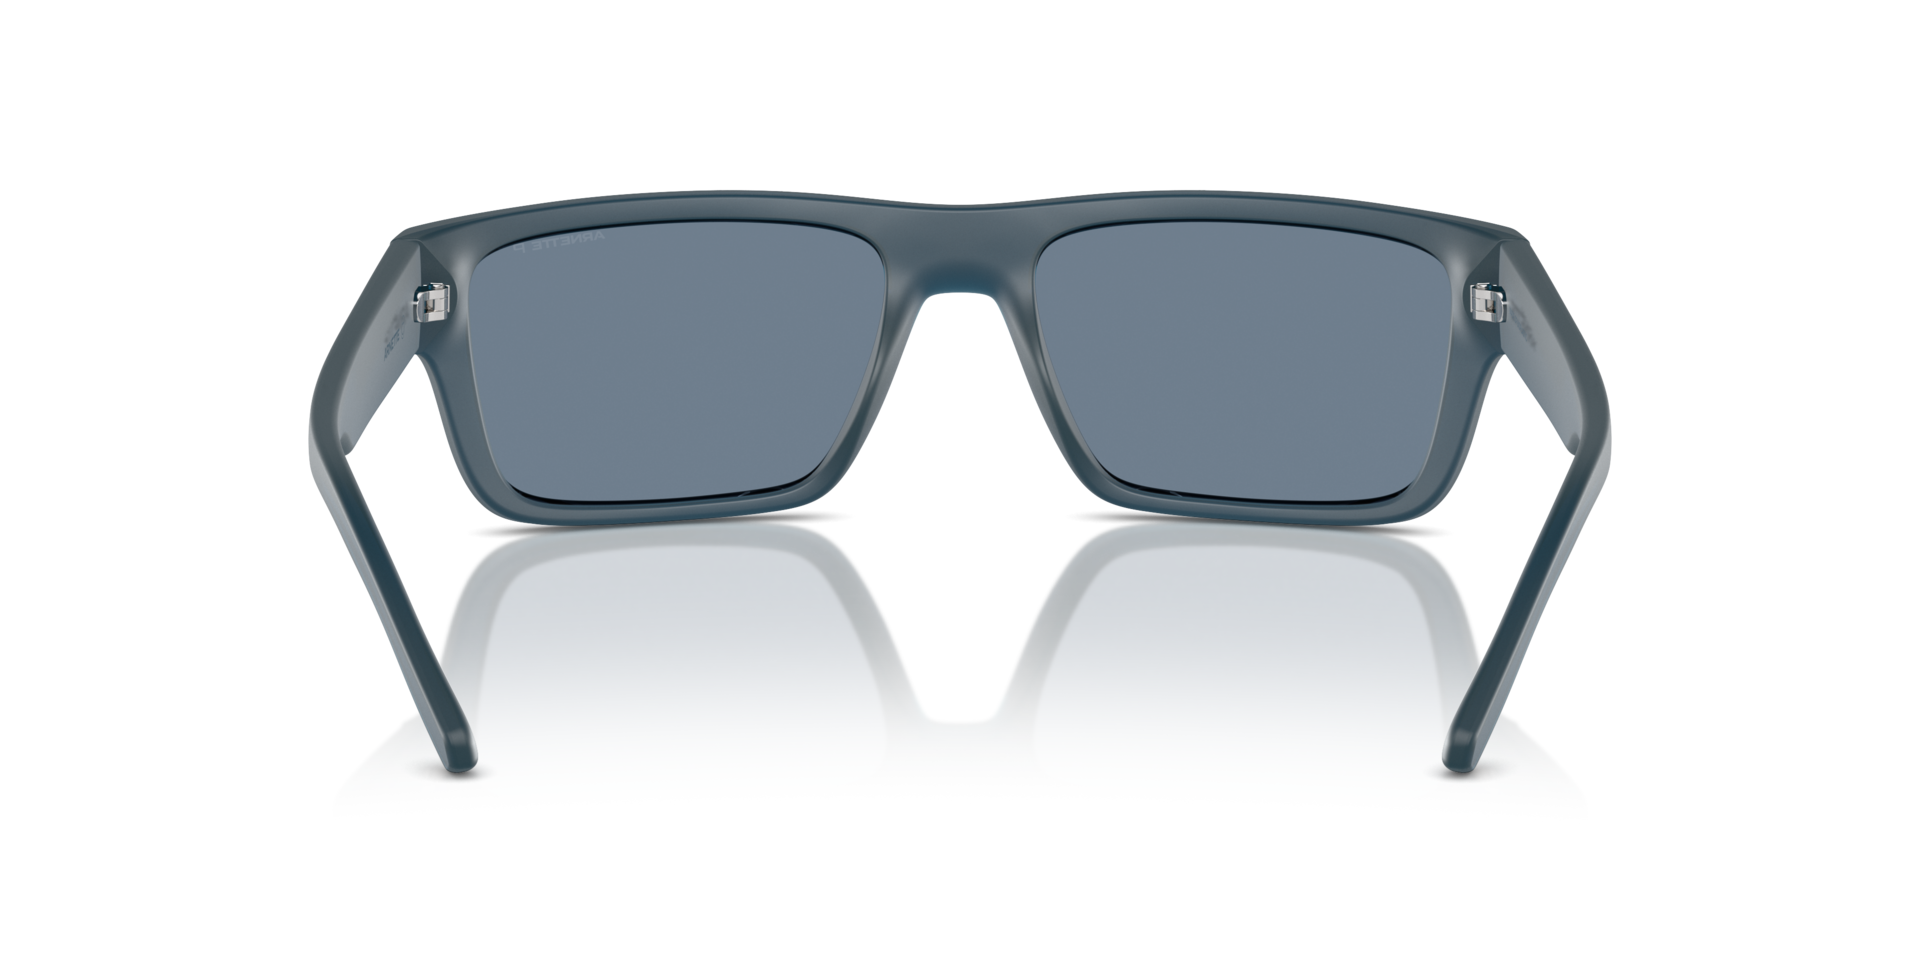 Das Bild zeigt die Sonnenbrille AN4338 29012V von der Marke Arnette in blau.